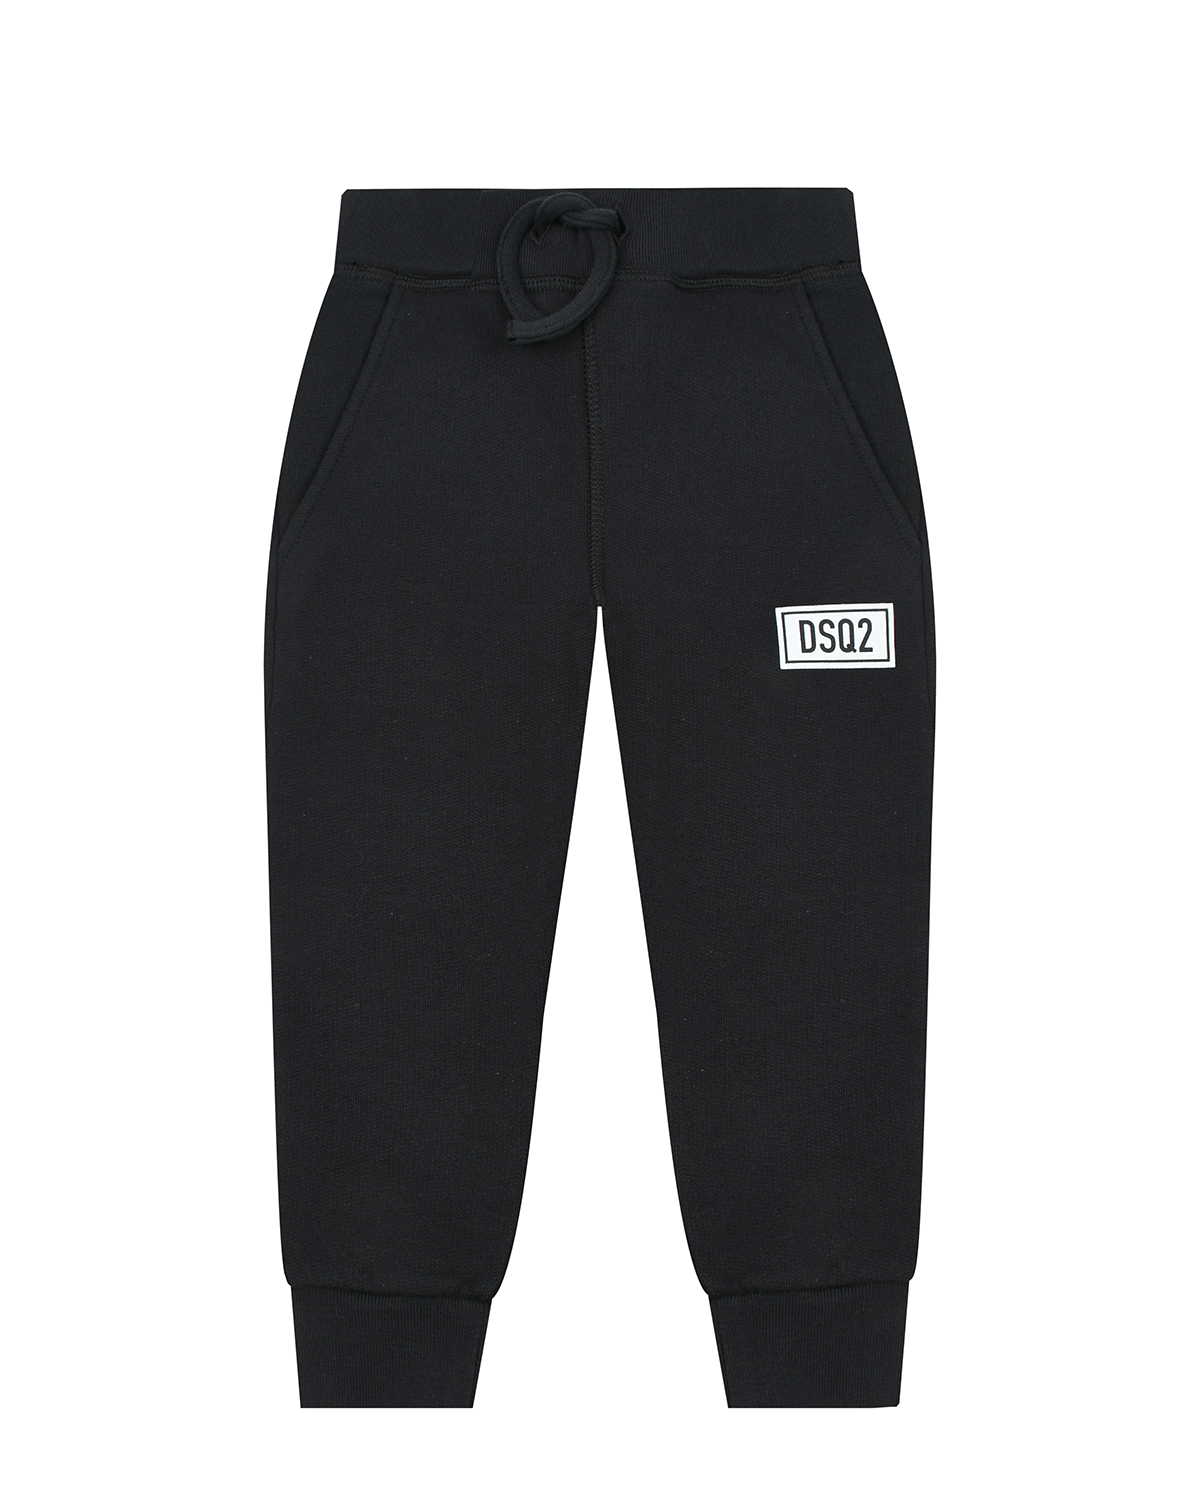 Черные спортивные брюки с лого Dsquared2 детские, размер 98, цвет черный